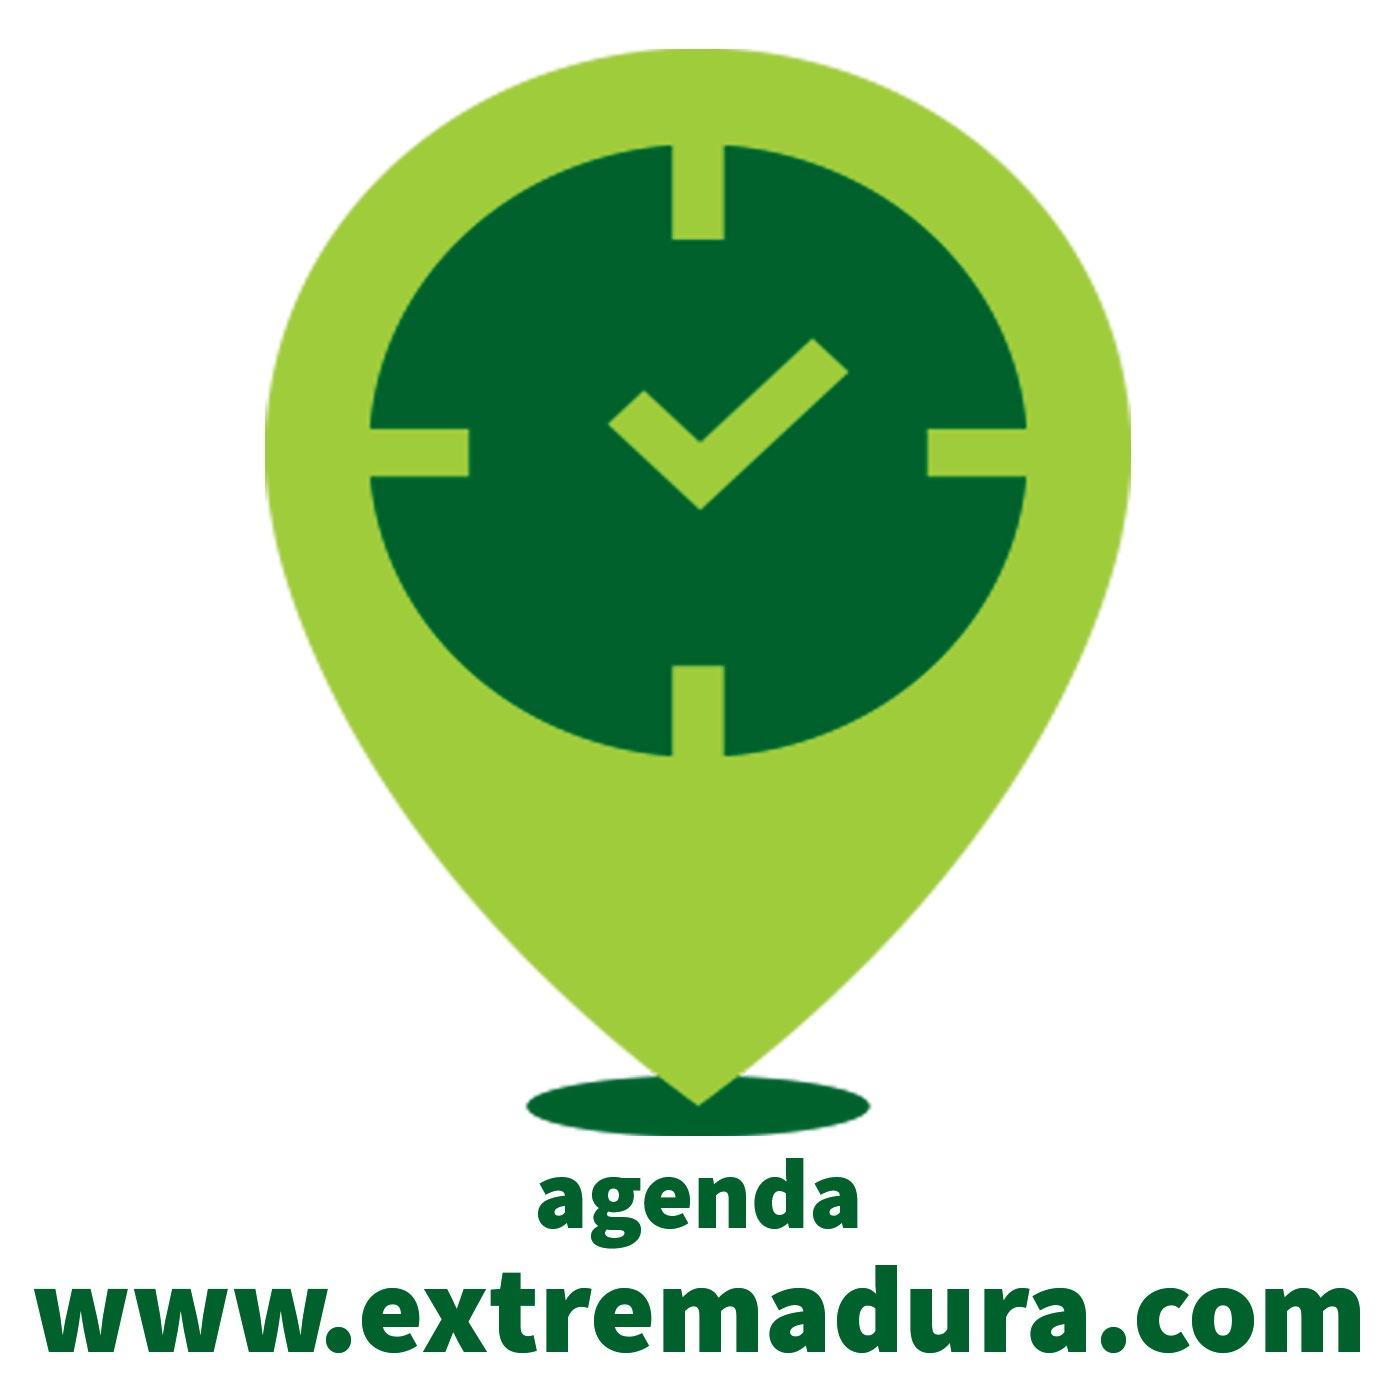 Bienvenid@s a la Agenda de Eventos de Extremadura!